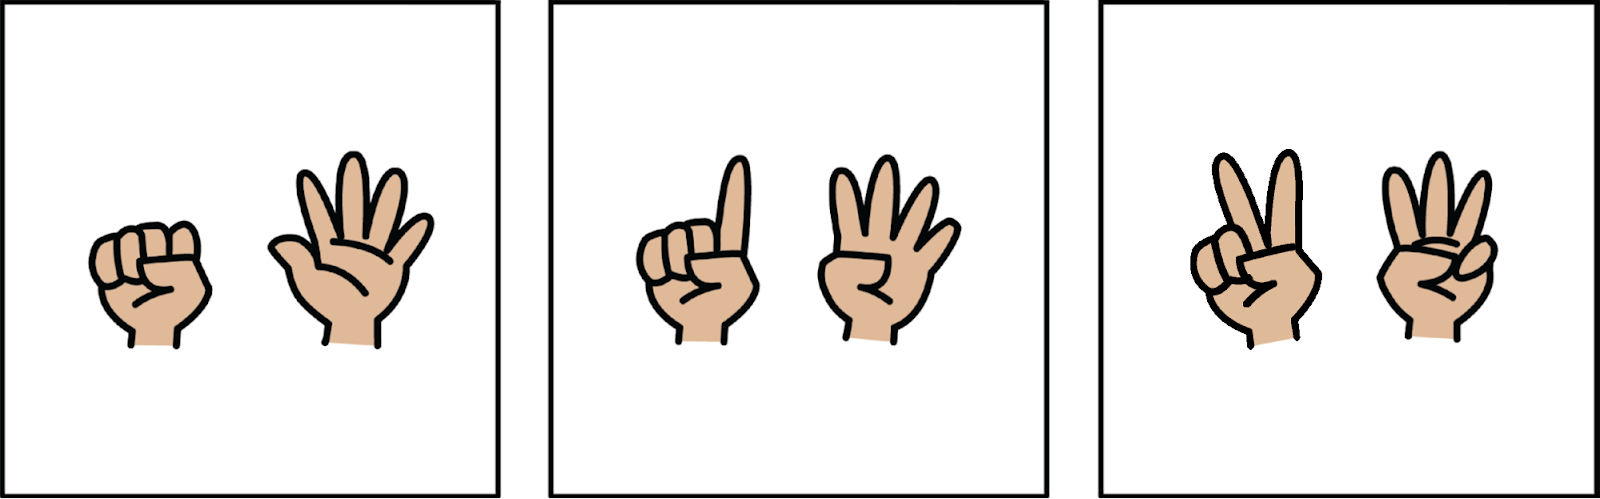 Primero, 1 mano que no muestra ningún dedo + 1 mano mostrando 5 dedos. Después, 1 mano mostrando 1 dedo + 1 mano mostrando 4 dedos. Por último, 1 mano mostrando 2 dedos + 1 mano mostrando 3 dedos.